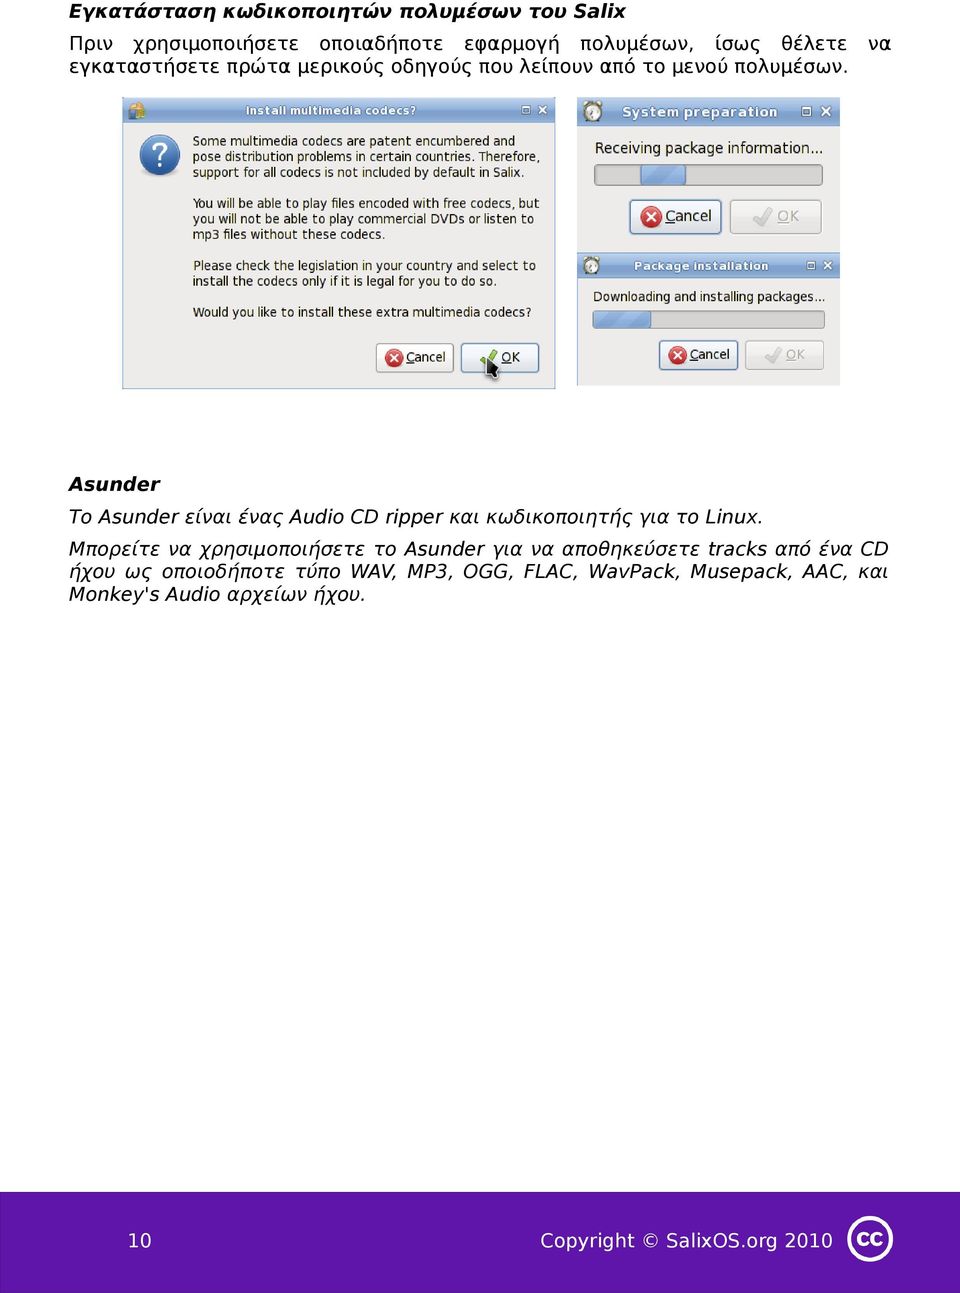 Asunder Το Asunder είναι ένας Audio CD ripper και κωδικοποιητής για το Linux.